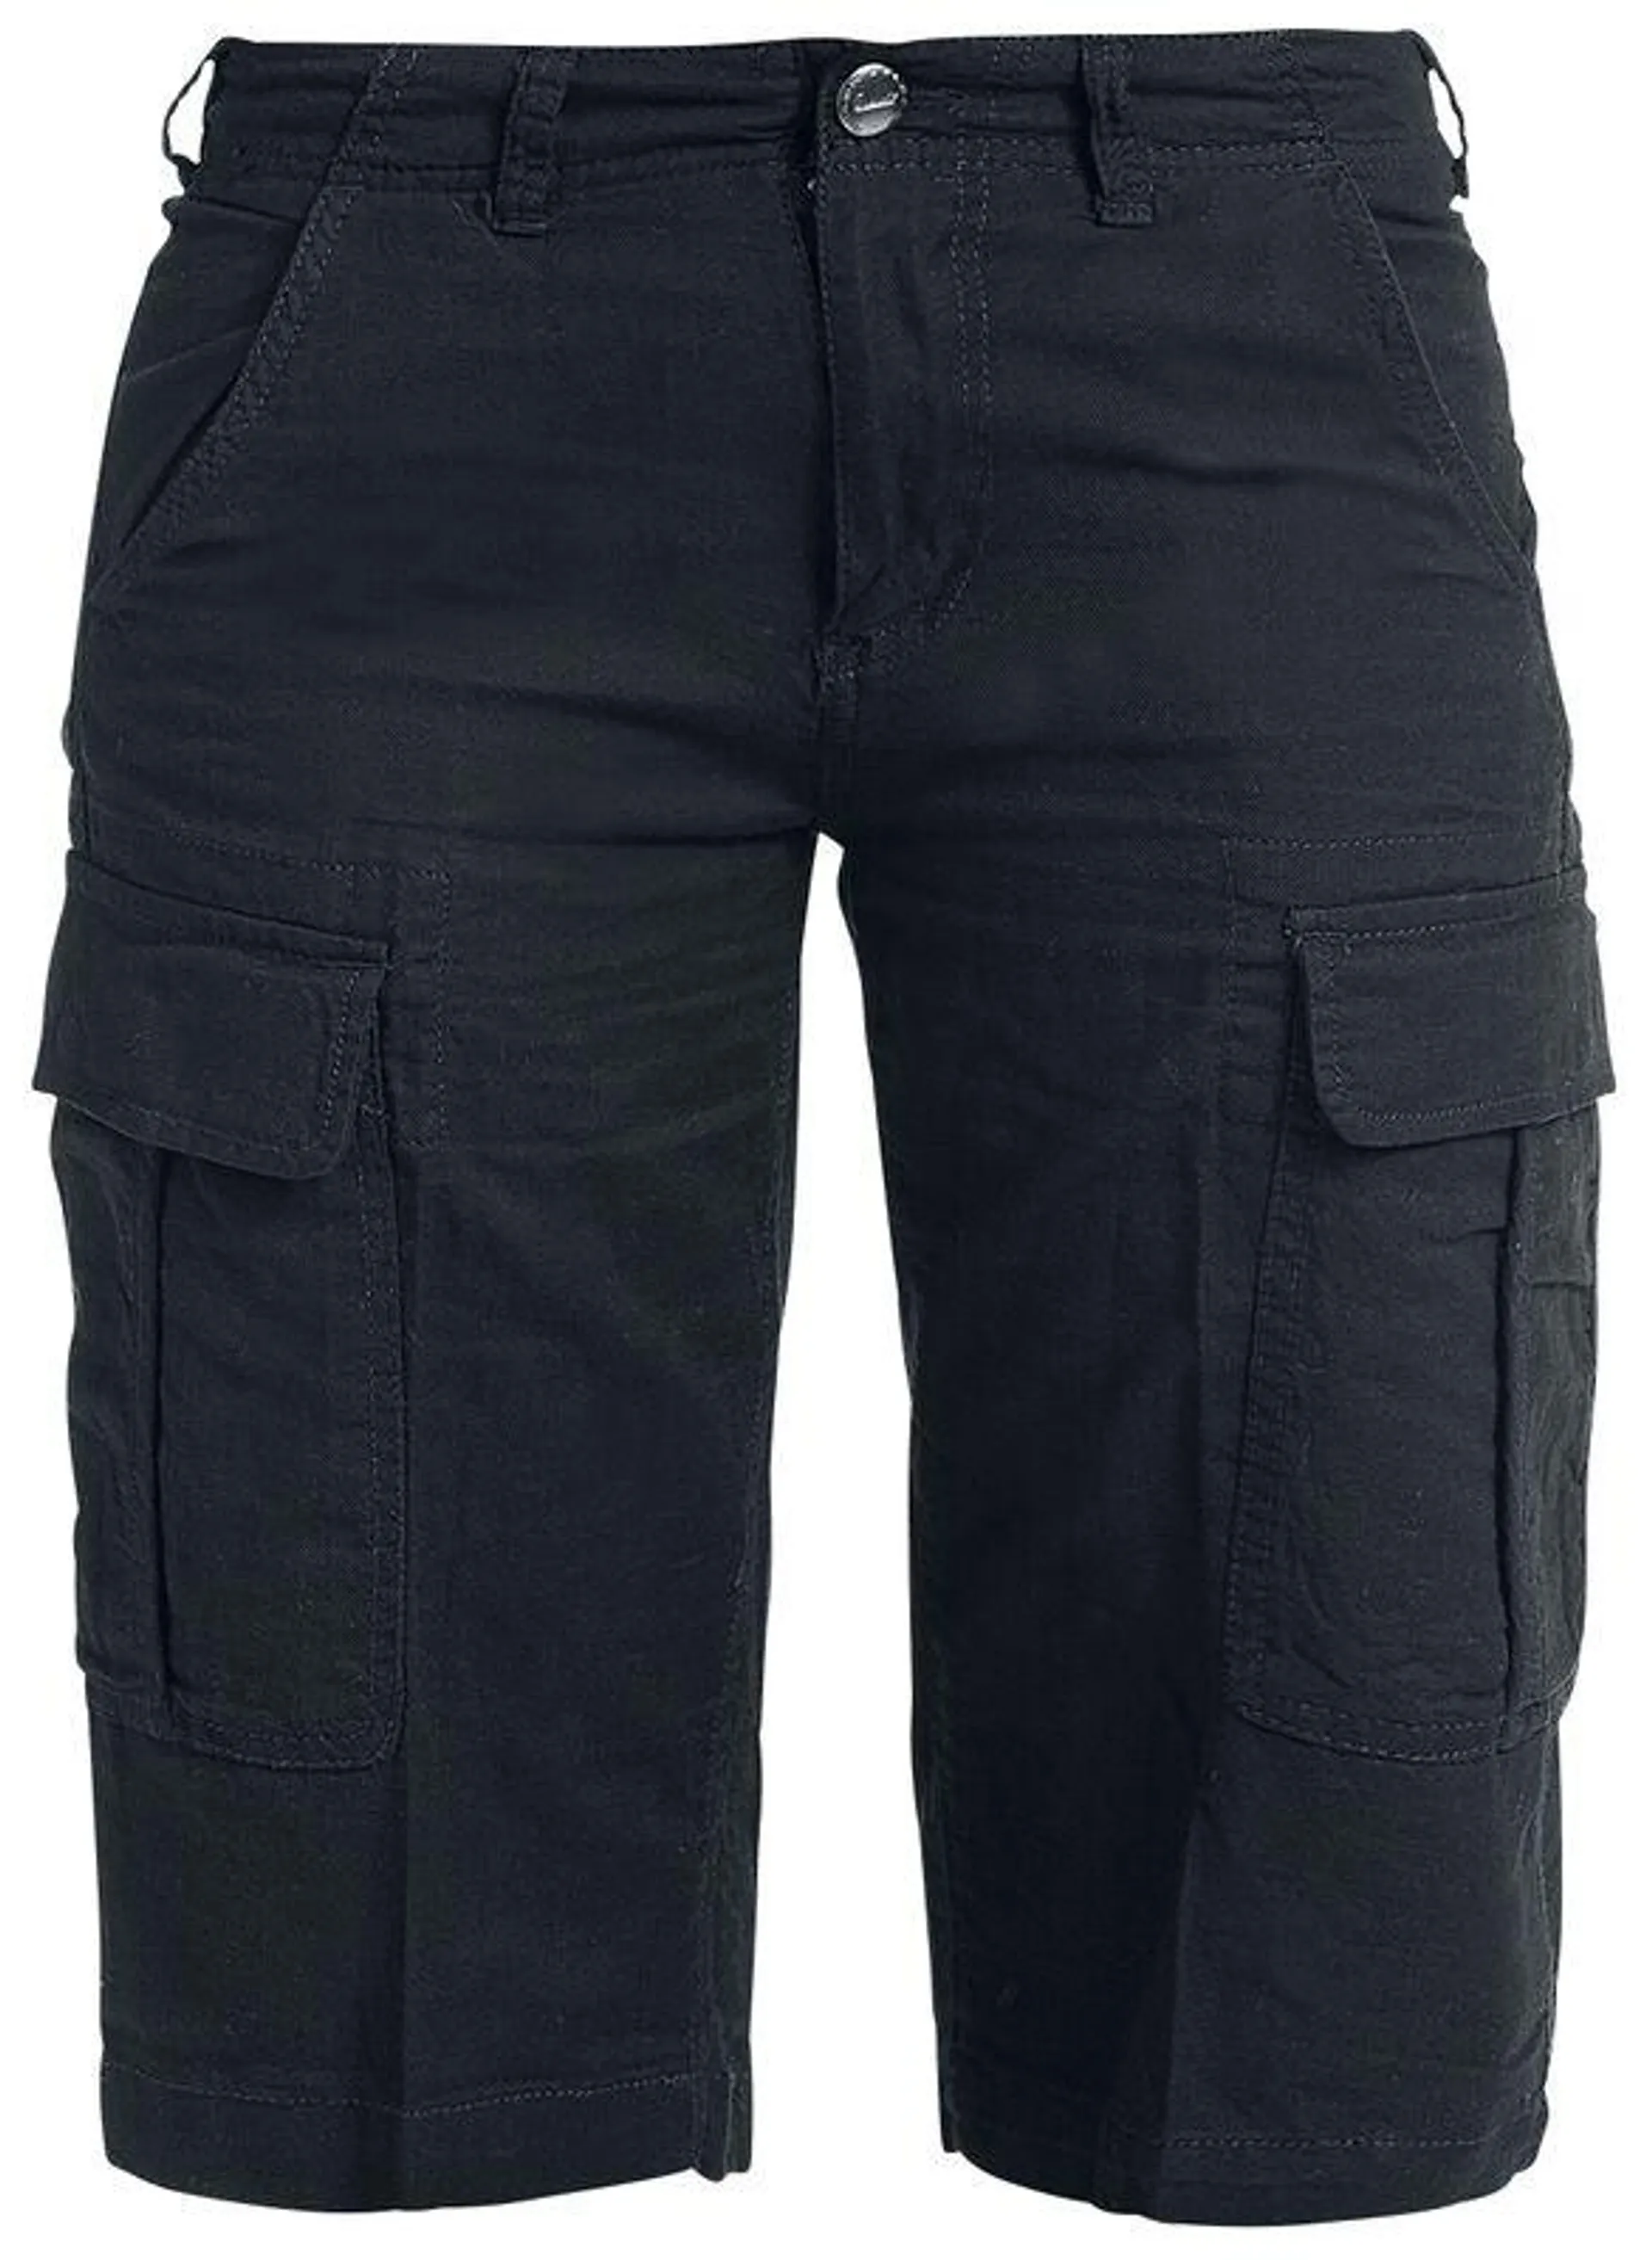 "Havannah Vintage Shorts" Pantalones cortos Negro de Brandit